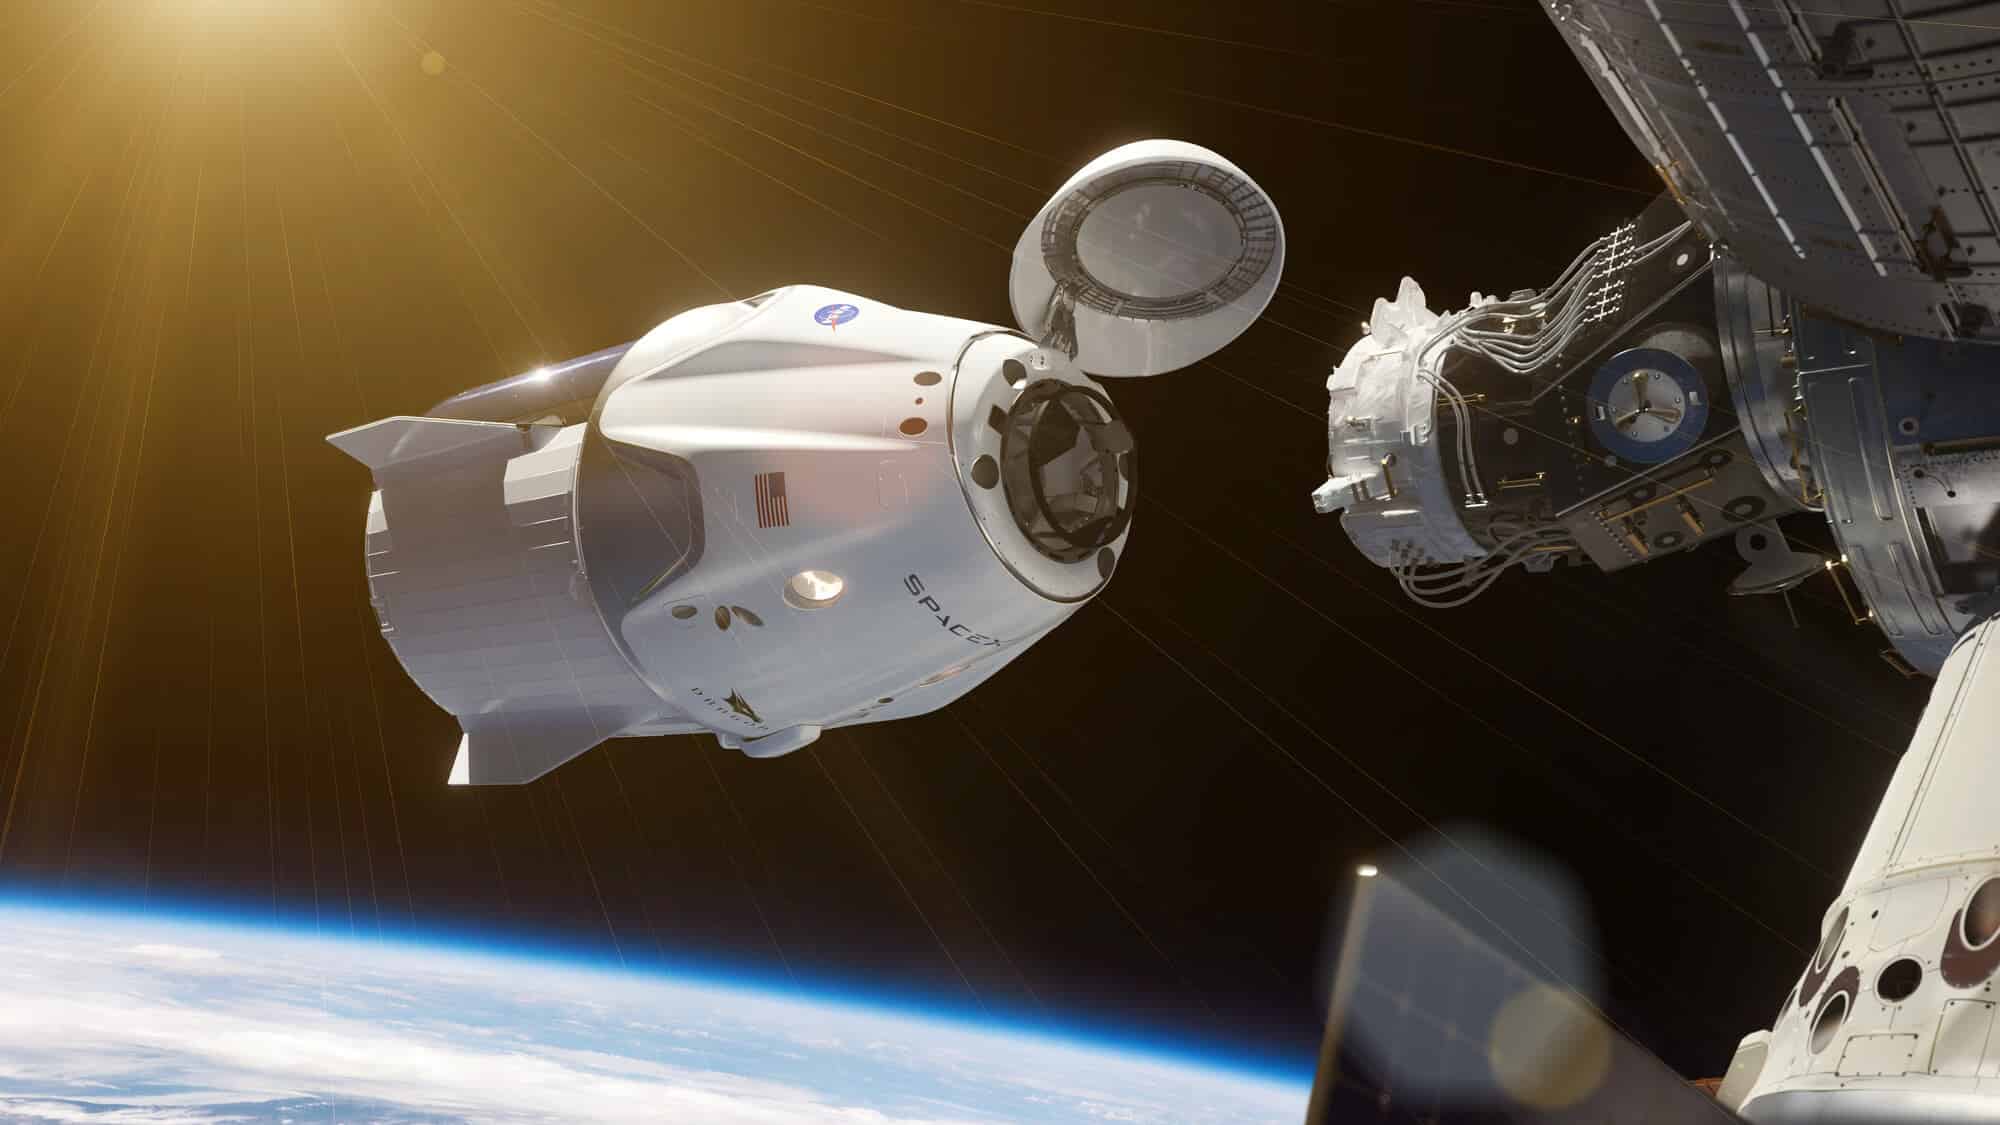 חללית Crew Dragon של SpaceX מתקרבת לעגינה בתחנת החלל. <a href="https://depositphotos.com. ">המחשה: depositphotos.com</a>